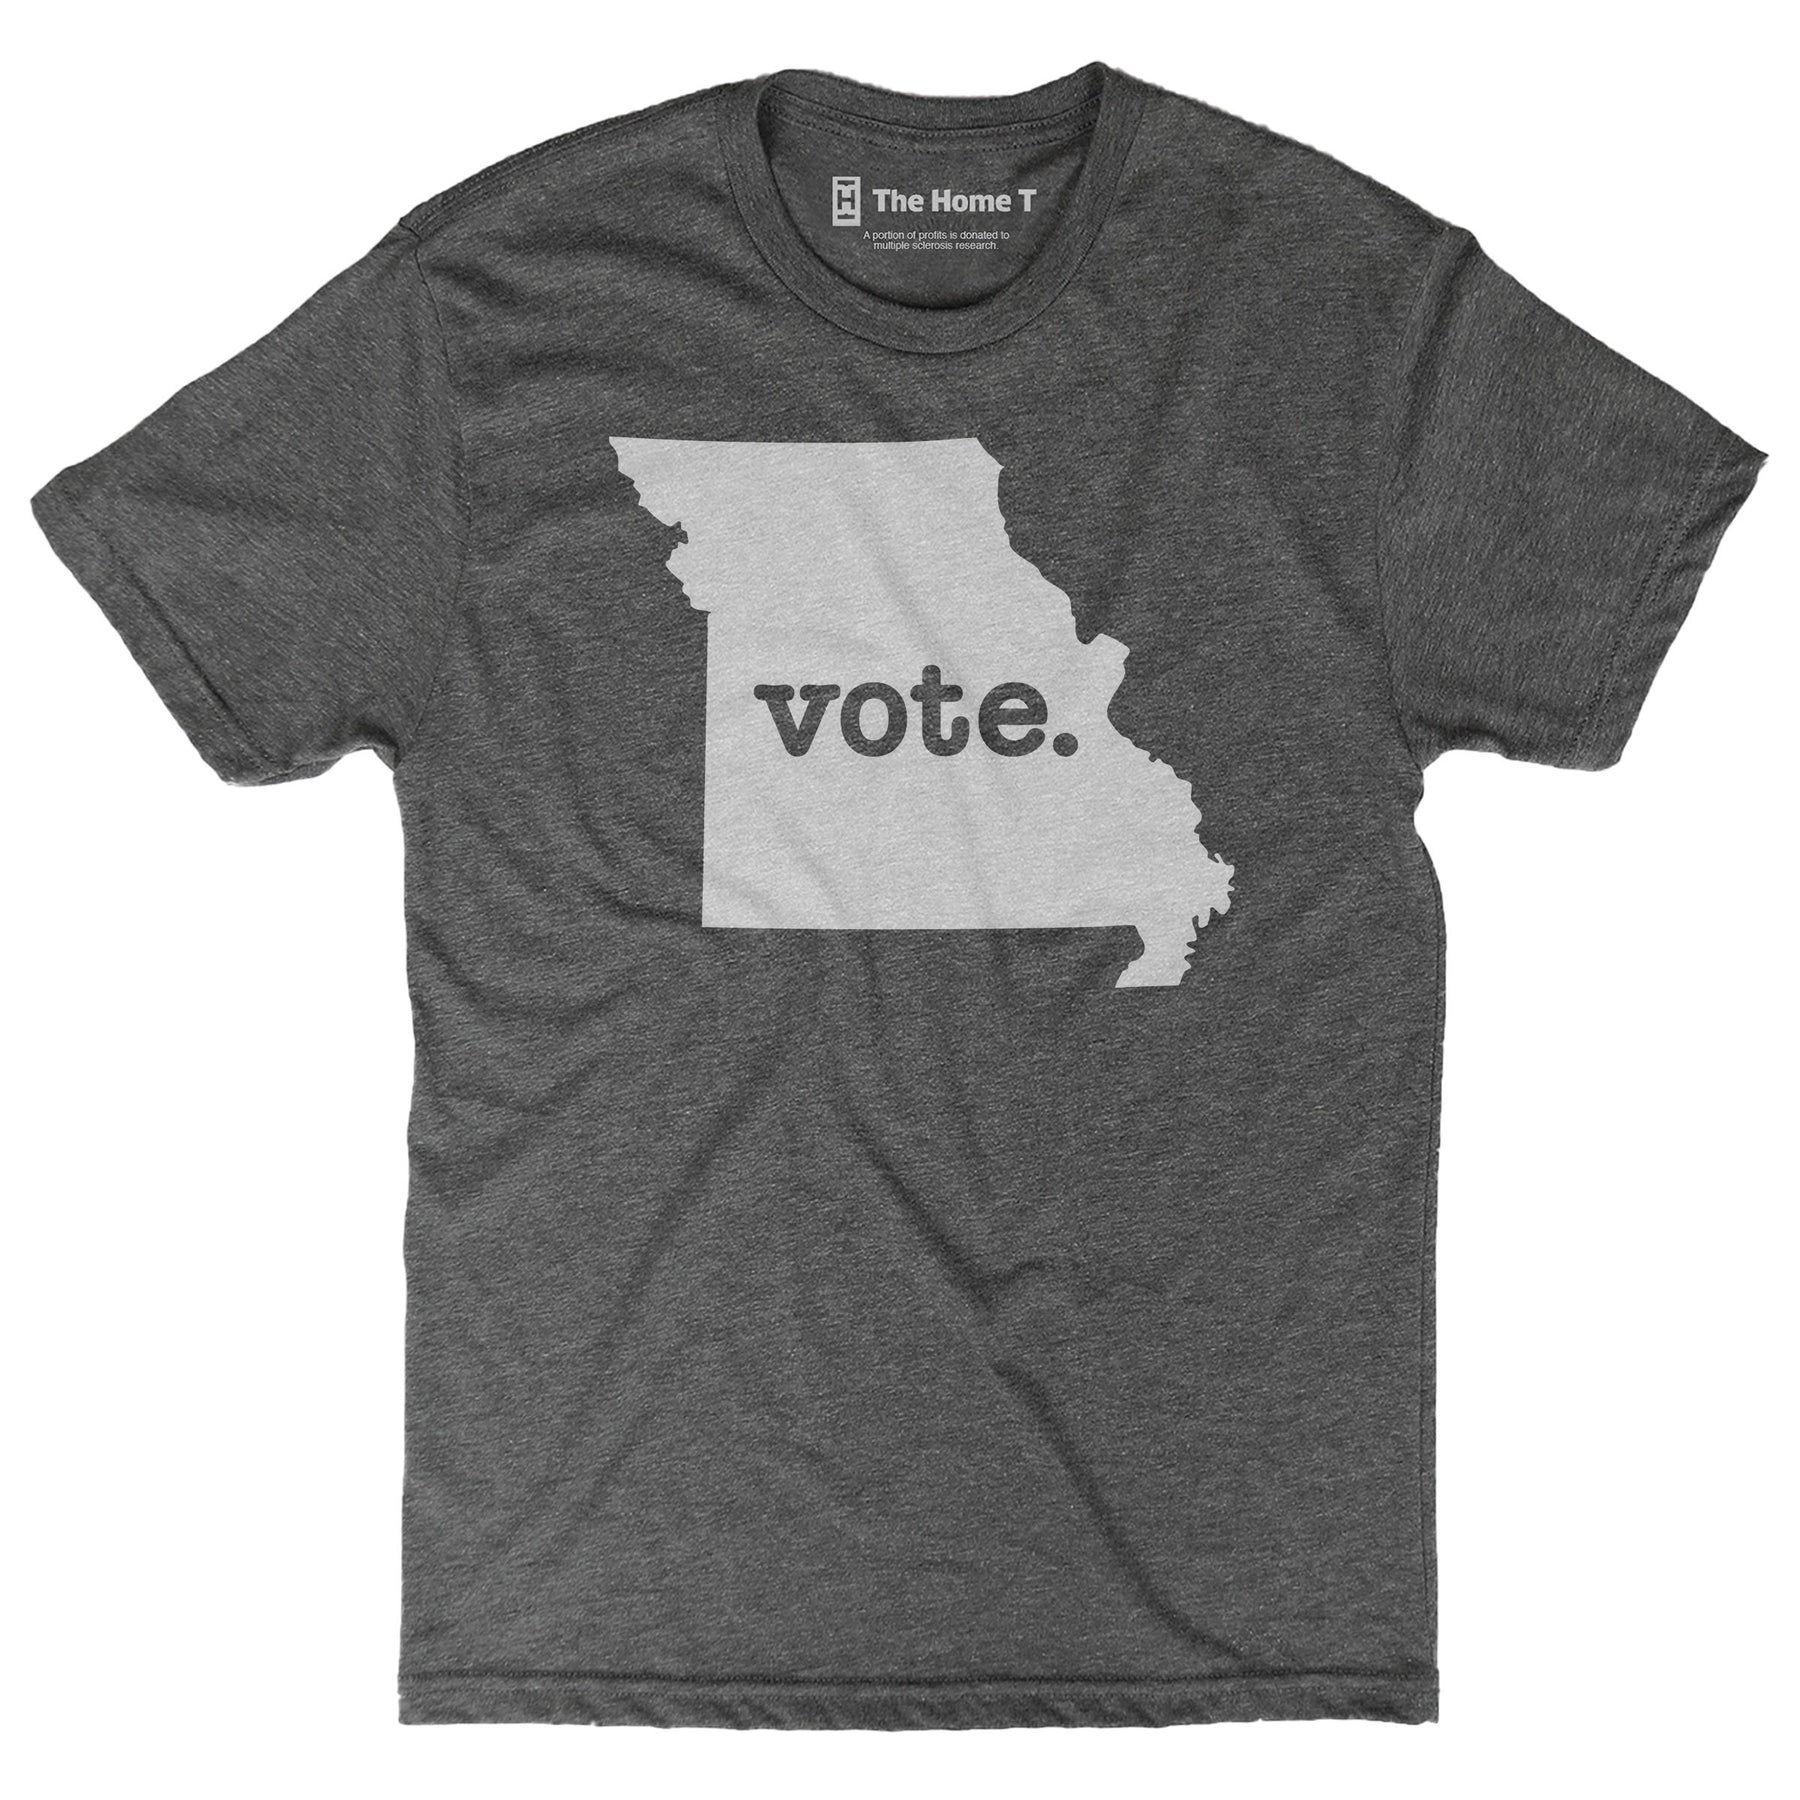 Missouri Vote Home T Vote The Home T XS Grey